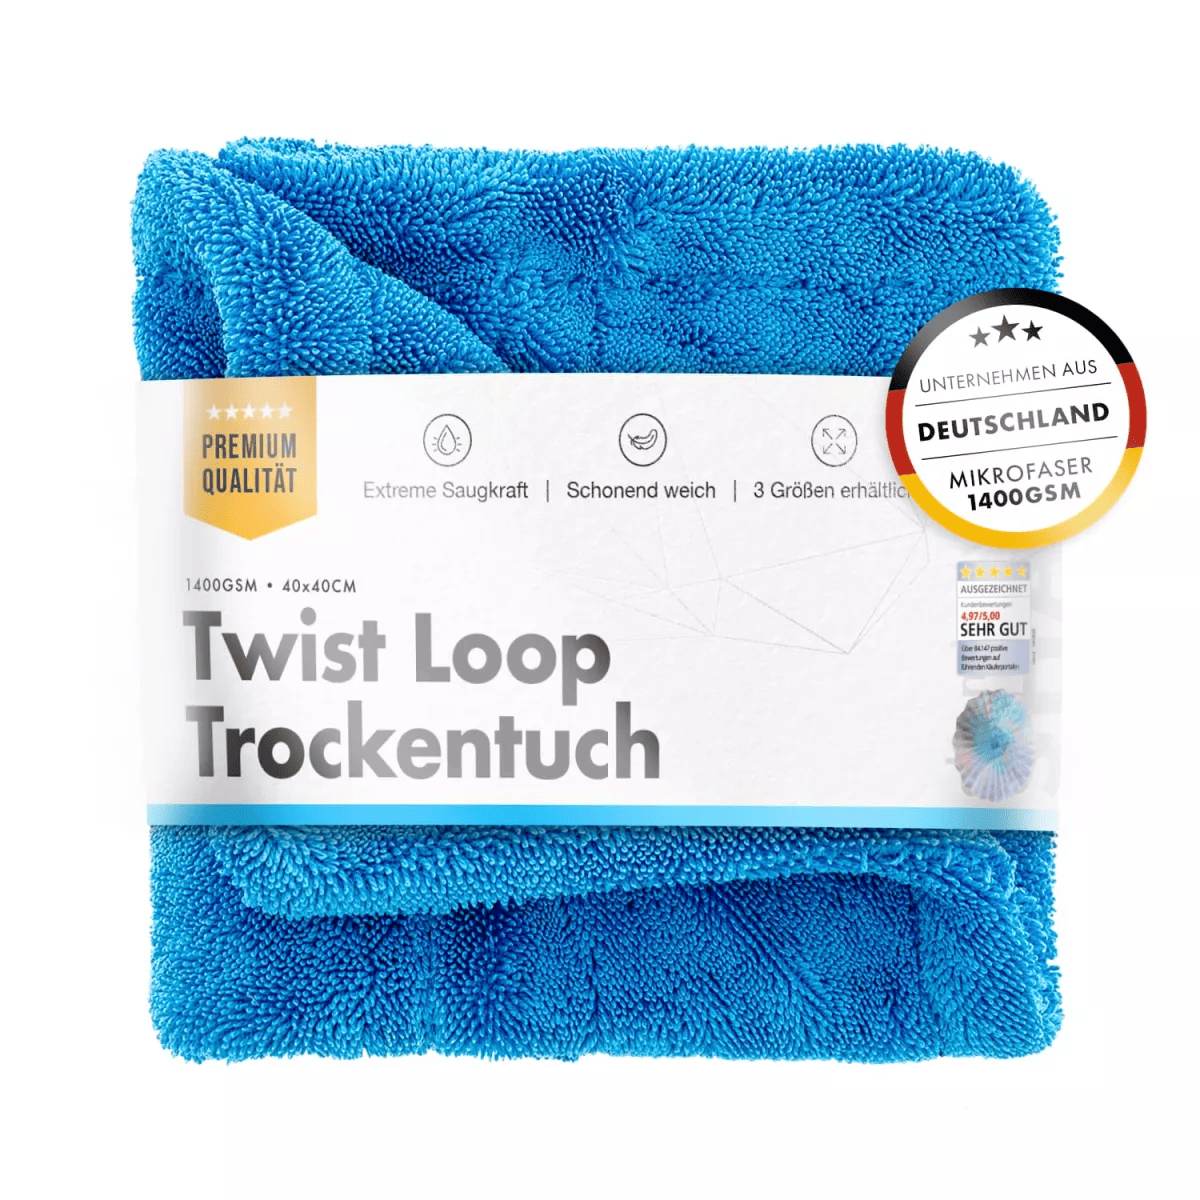 chemicalworkz Shark Twisted Loop Towel 1400GSM Blau Trockentuch 40x40cm